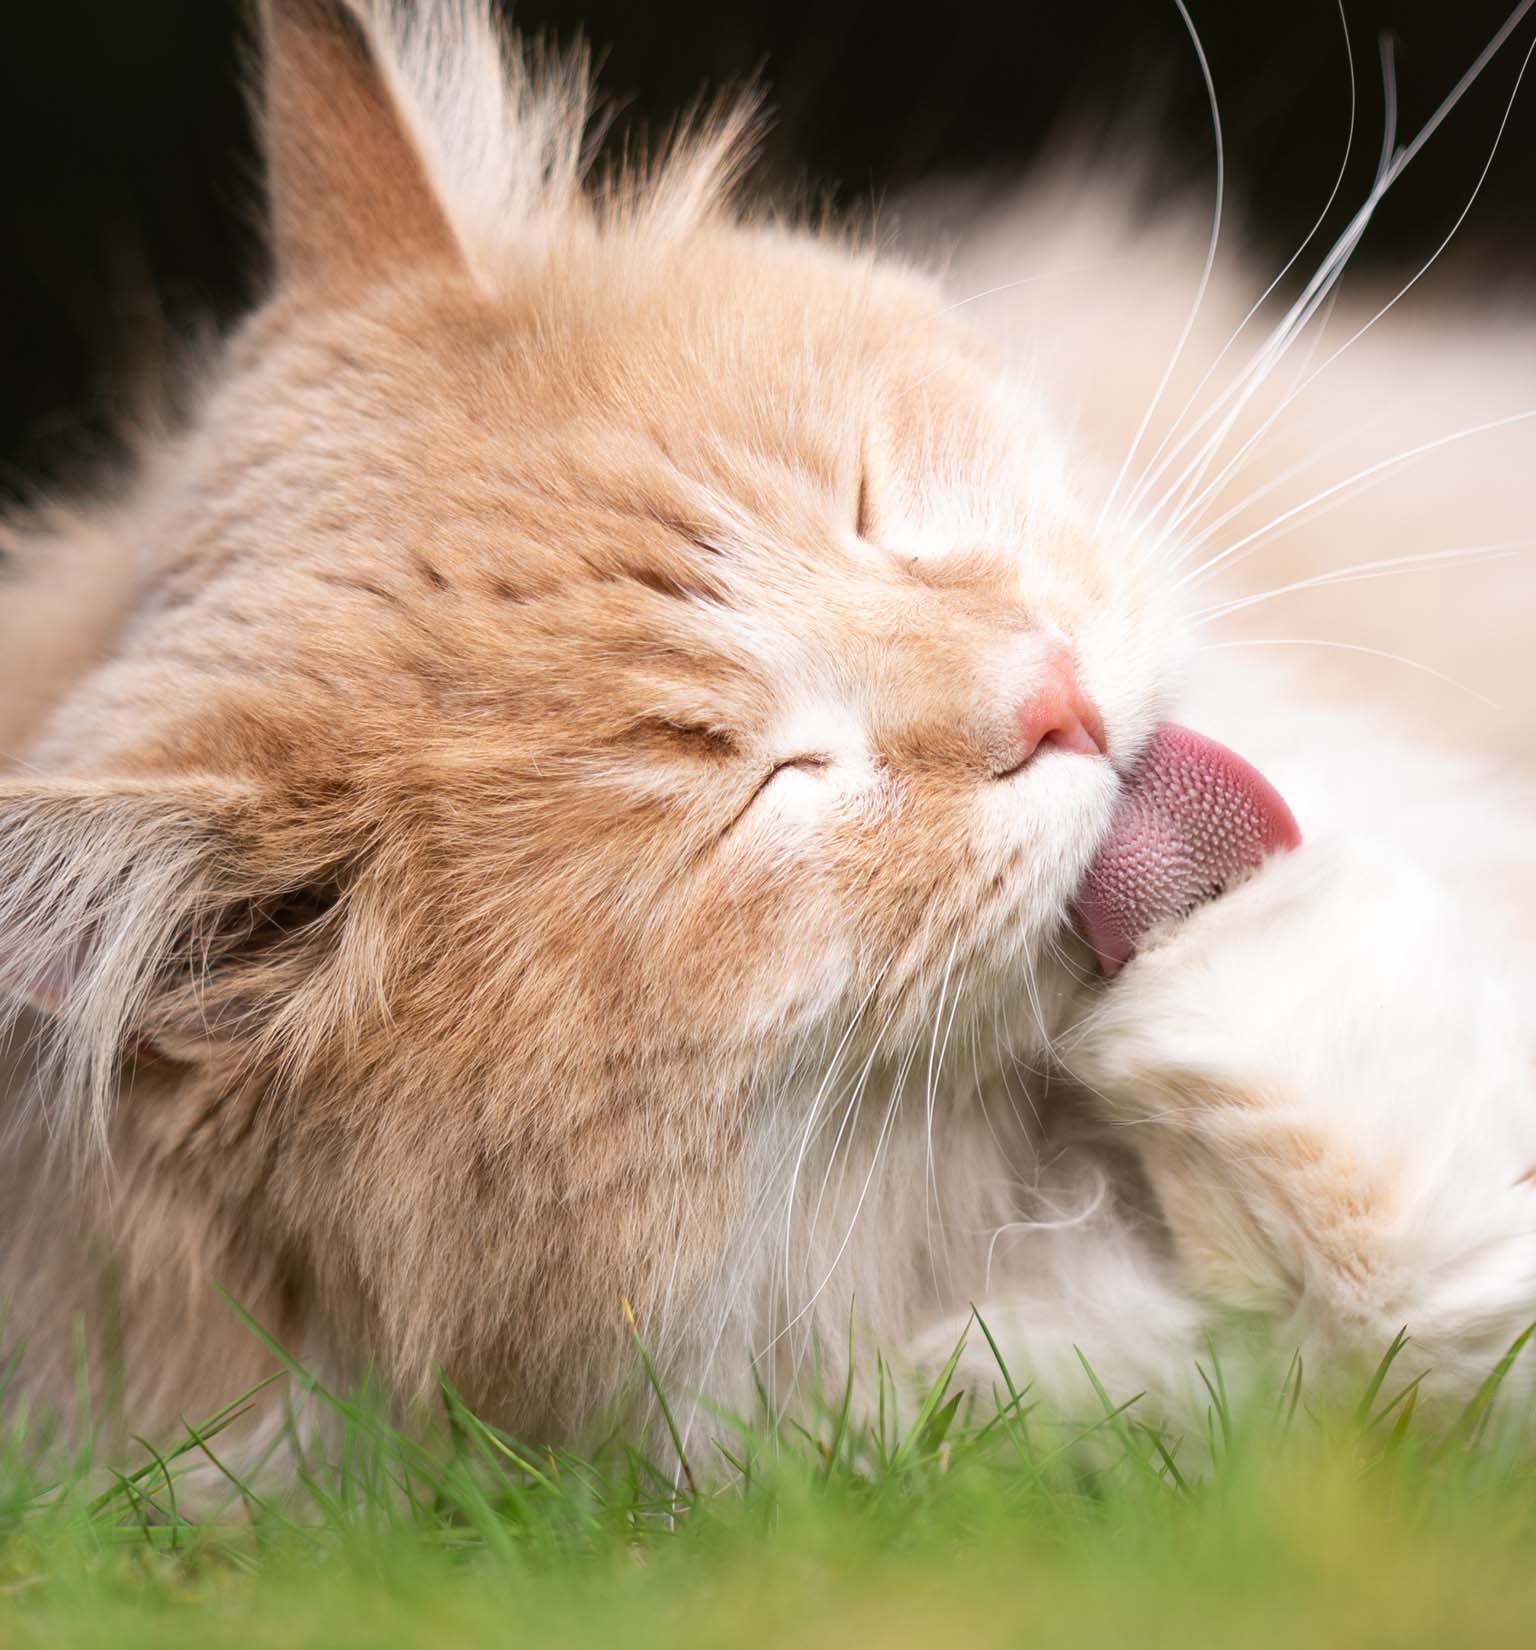 Pourquoi les chats crachent-ils des boules de poils?